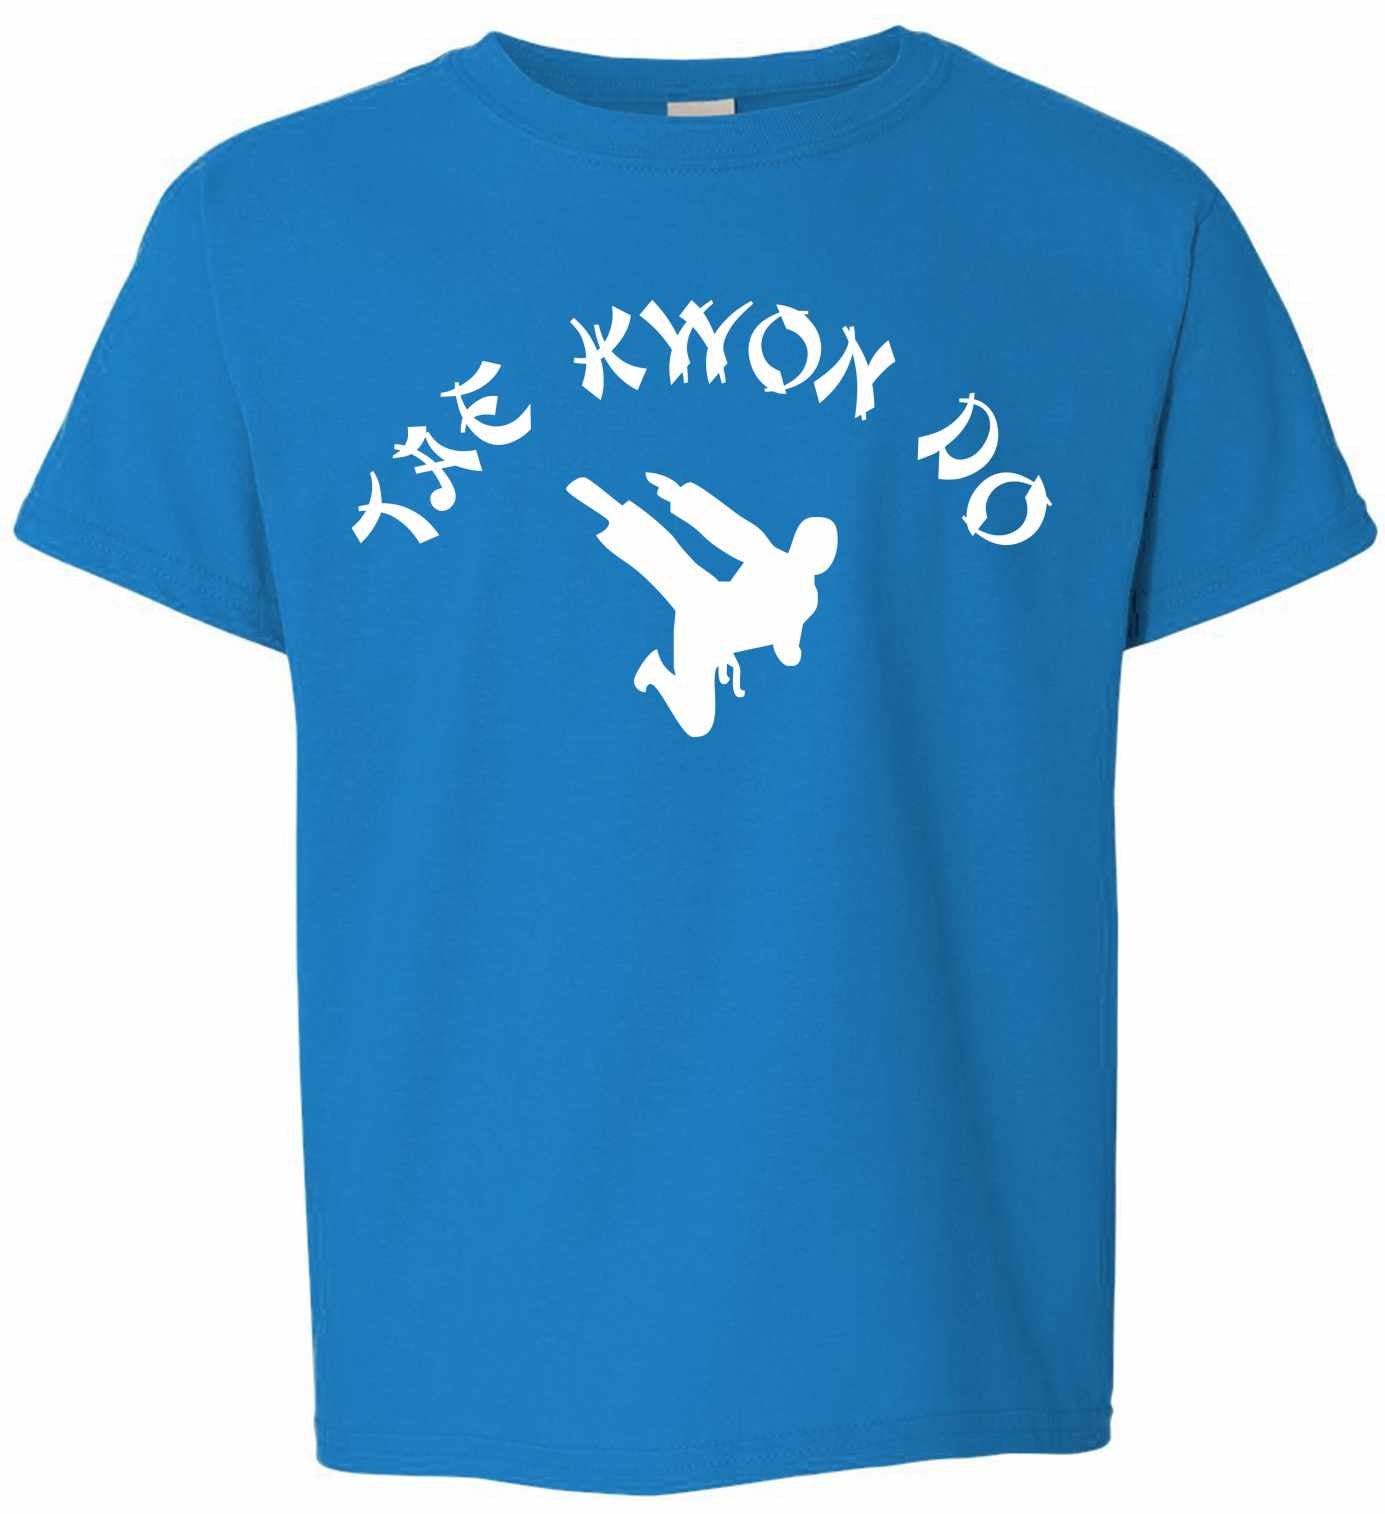 TAE KWON DO on Youth T-Shirt